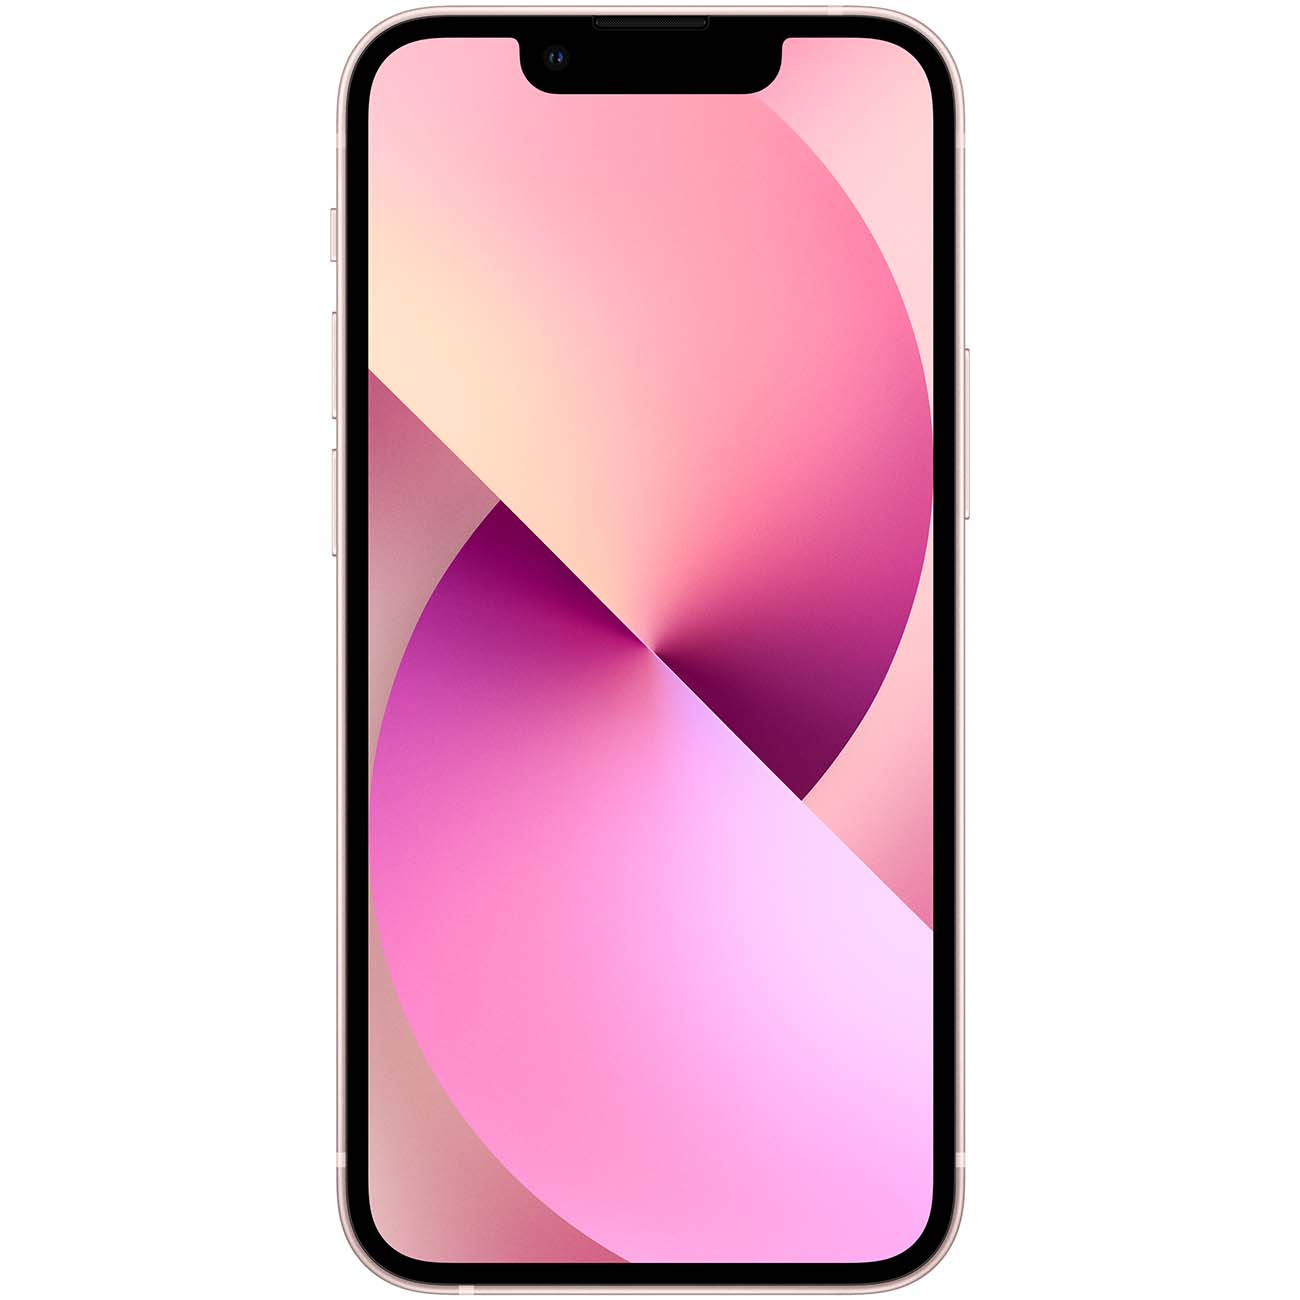 Купить смартфон apple iphone 13 512gb pink Apple iPhone 13 в официальном магазине Apple, Samsung, Xiaomi. iPixel.ru Купить, заказ, кредит, рассрочка, отзывы,  характеристики, цена,  фотографии, в подарок.